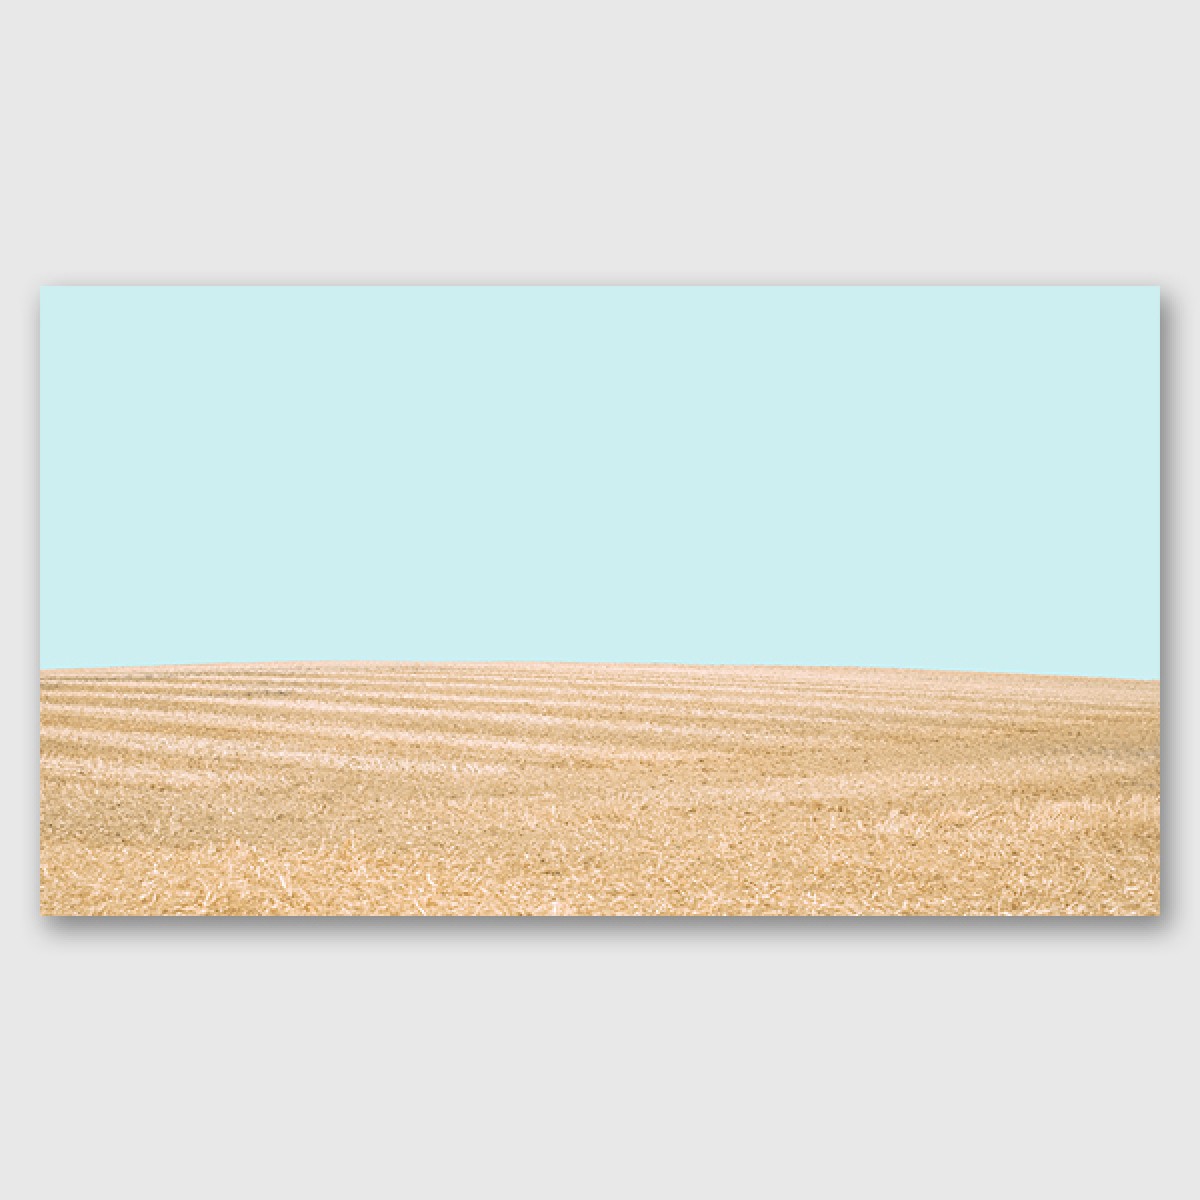 ZEITLOOPS "Fields of Gold", Posterprint, 27x48 cm